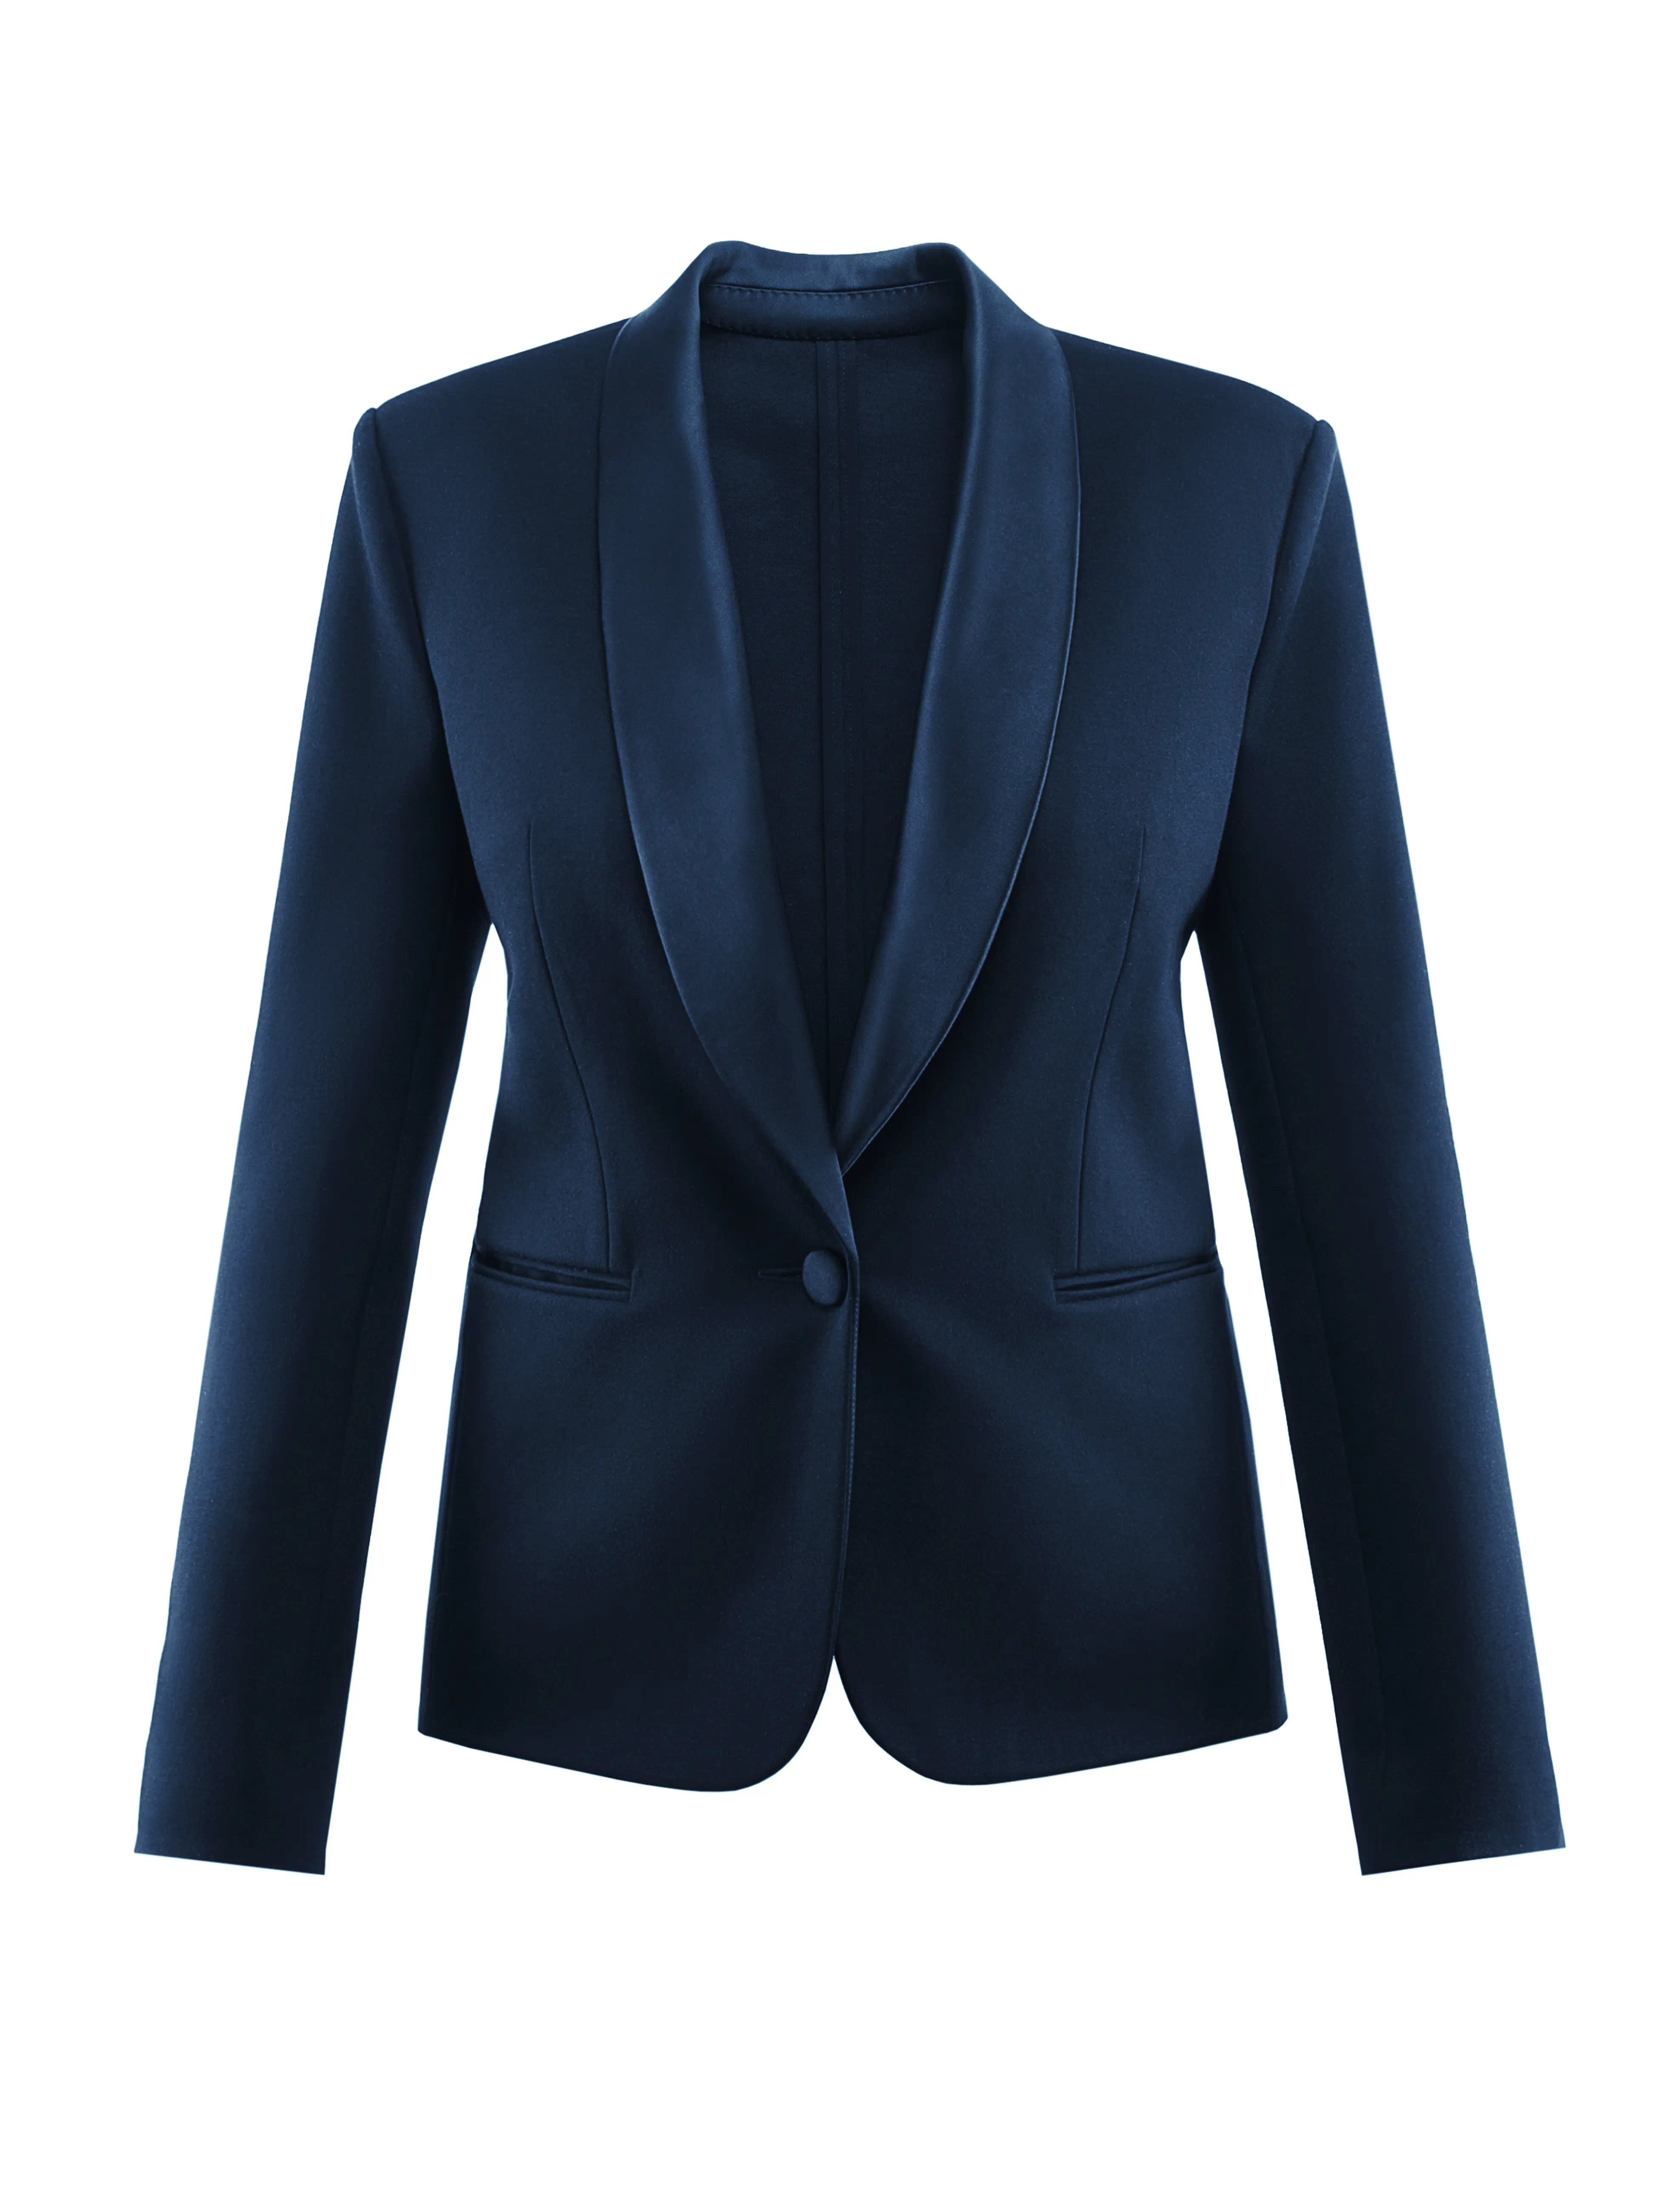 A blue woman's suit jacket.